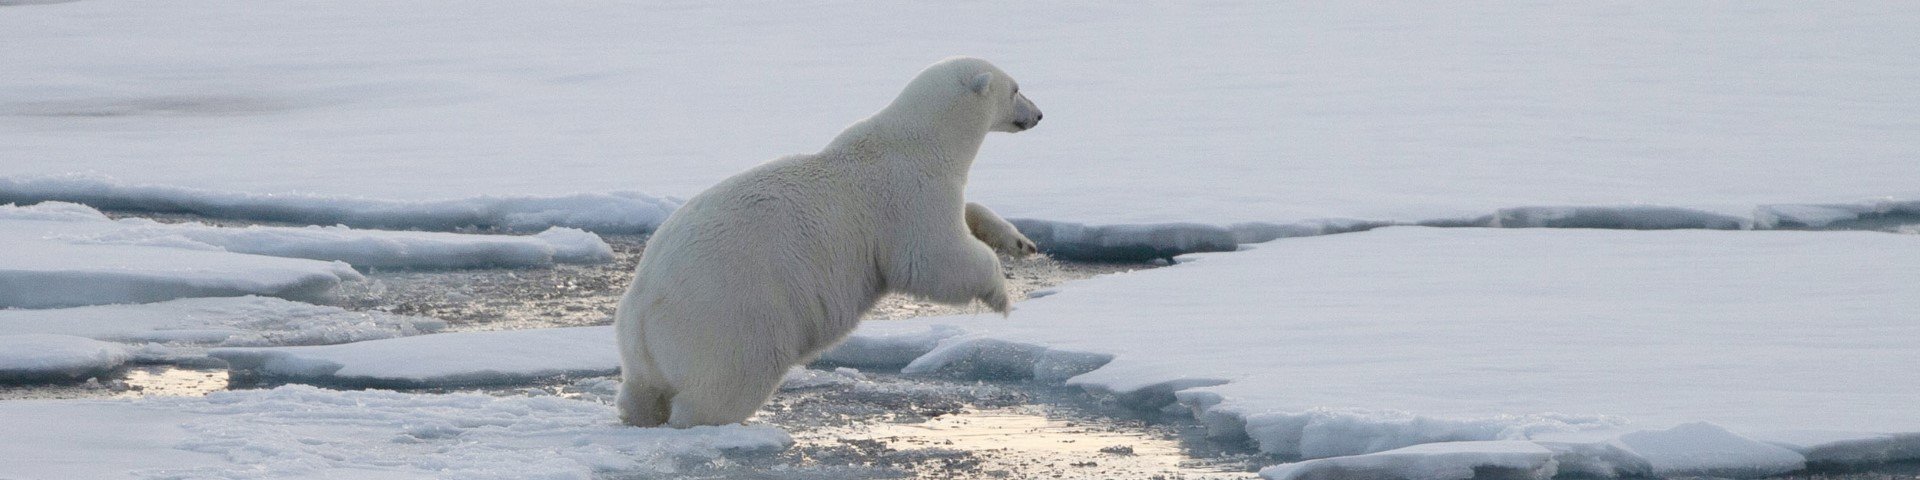 Eisbär klettert auf Eisscholle